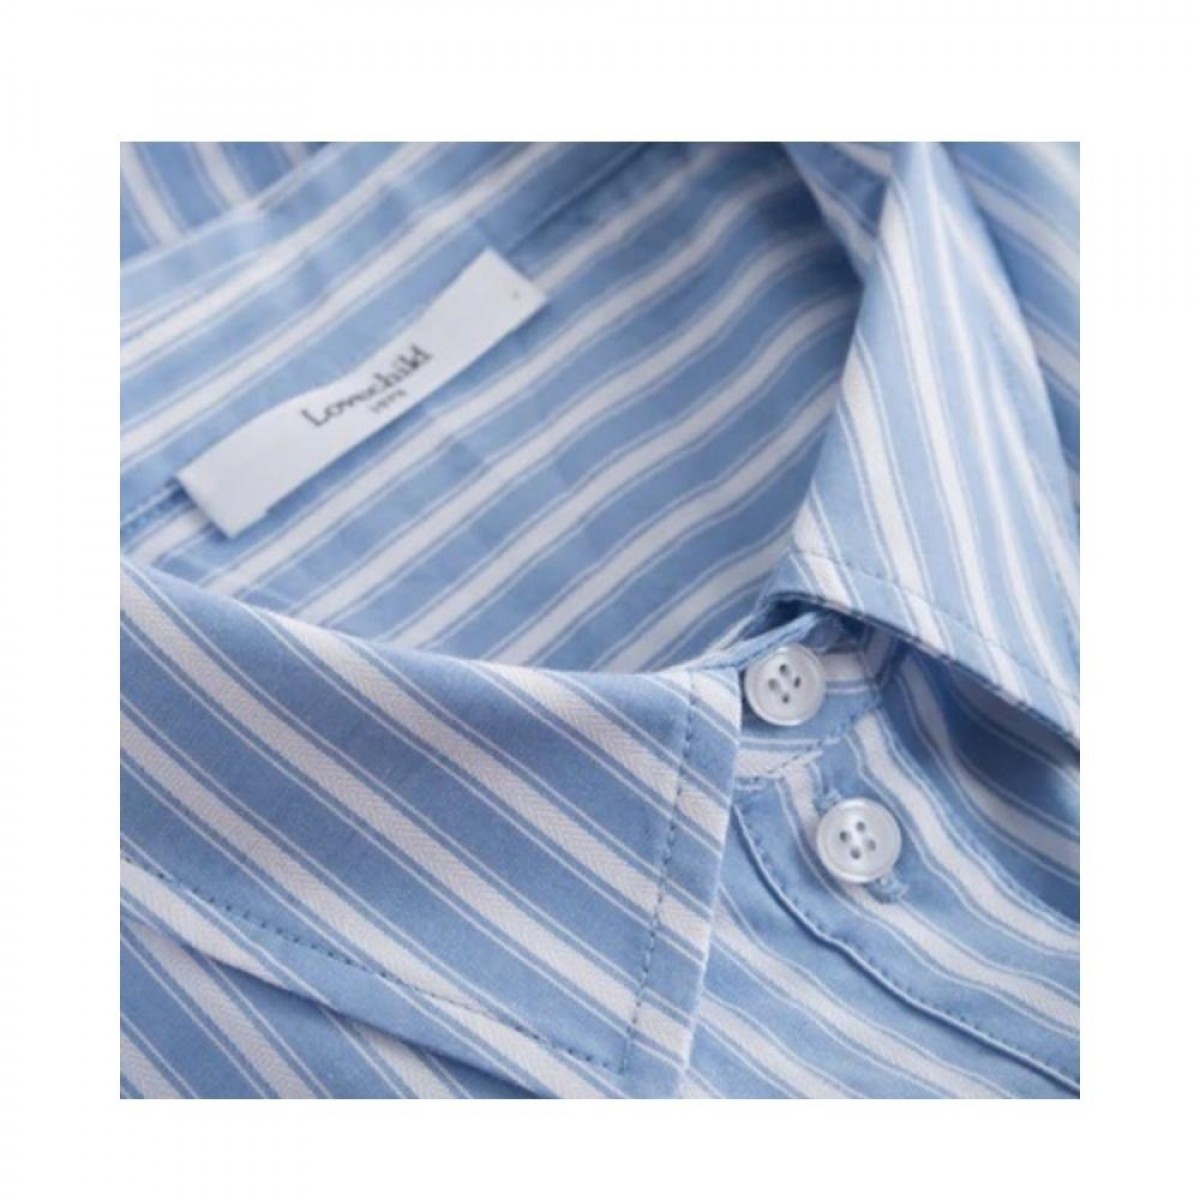 veneda shirt - clear blue - krave